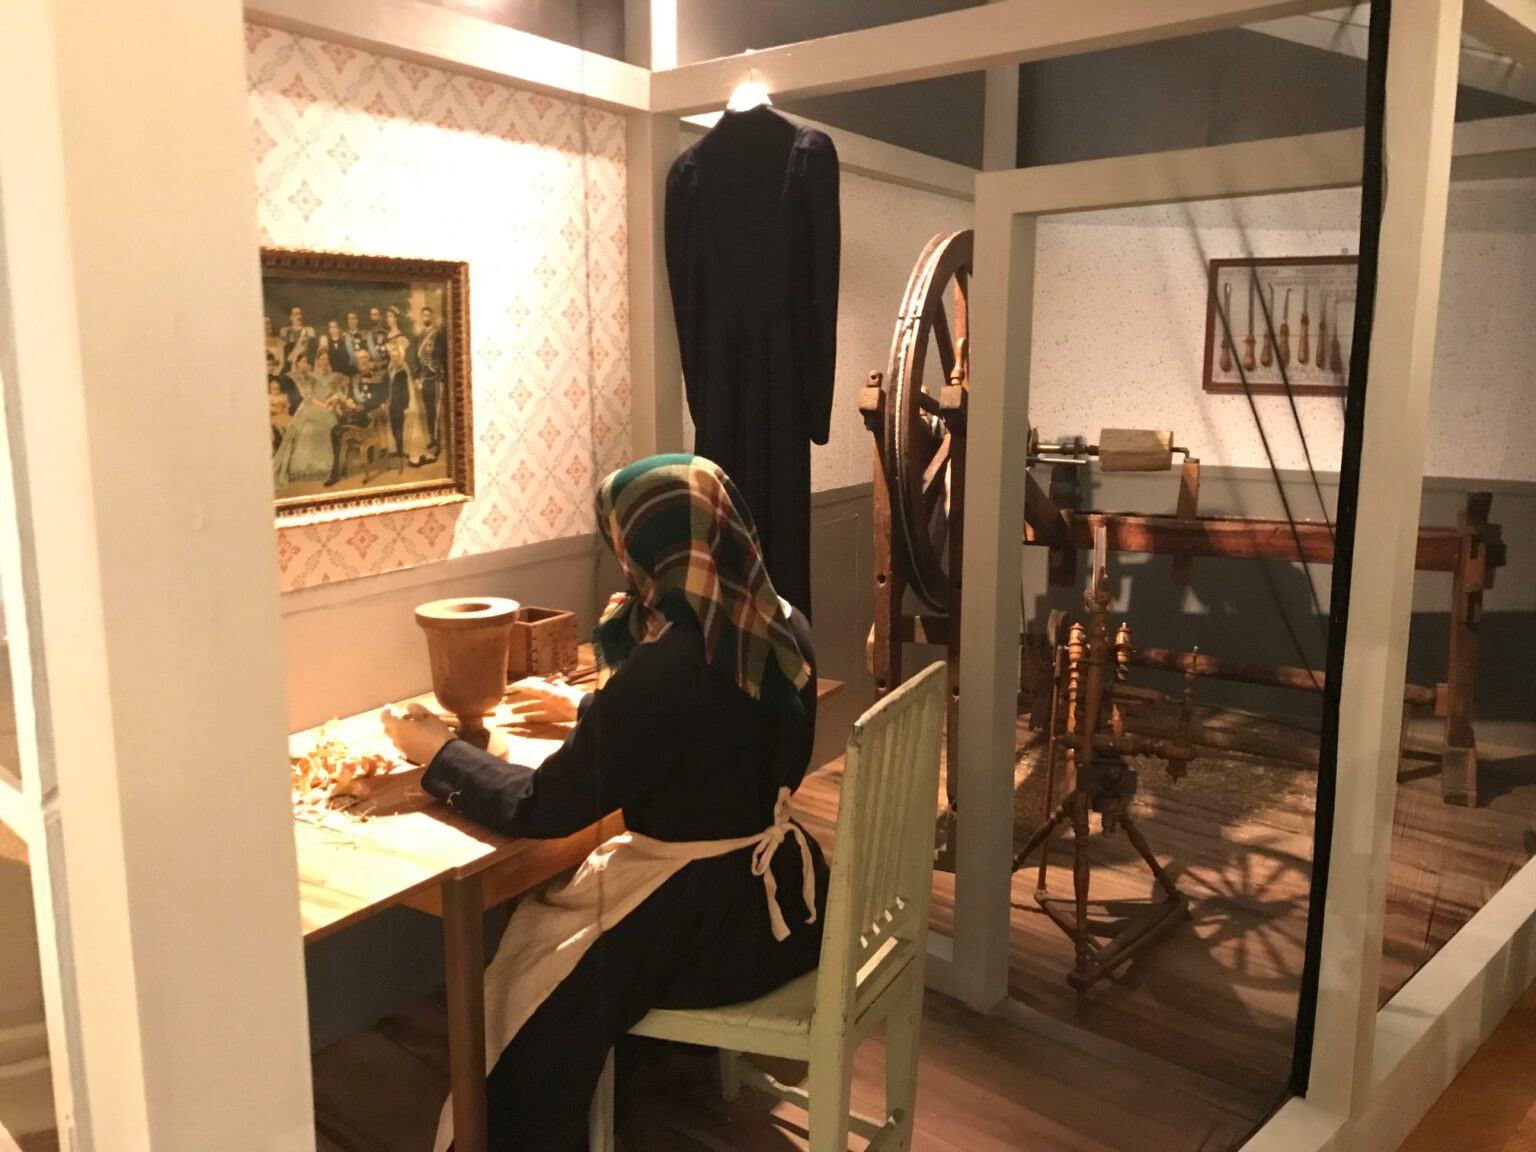 Interiörbild av ett gammaldags rum, en docka föreställandes en kvinna sitter vid ett bord och jobbar med trähantverk.